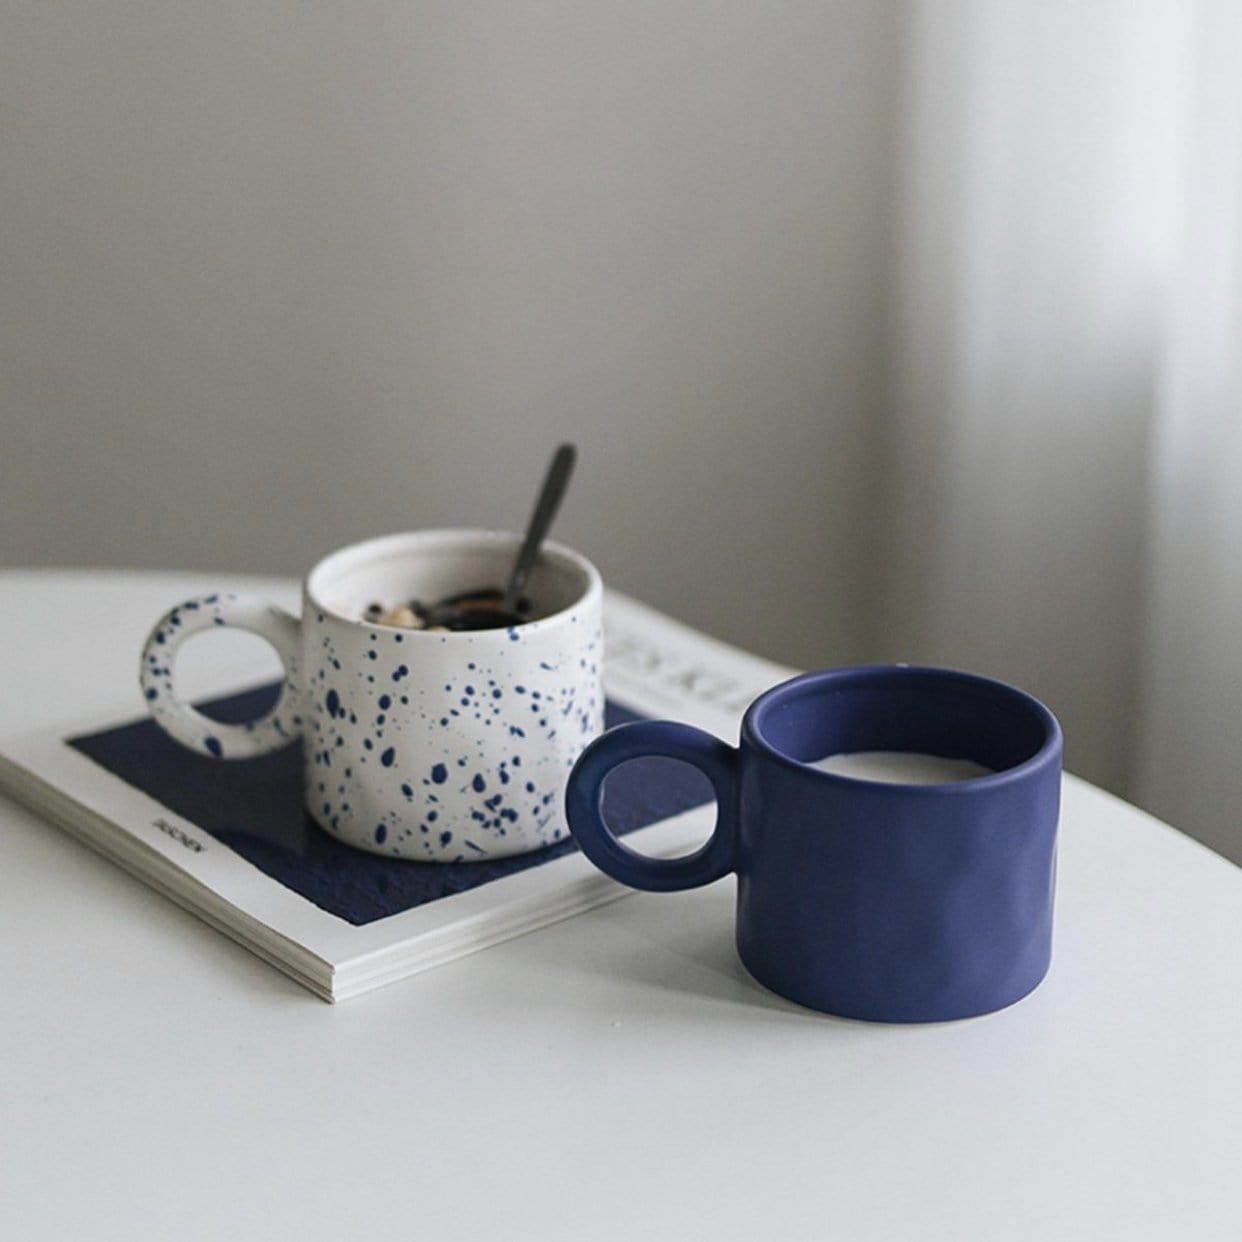 Big Handle Creative Mug - Designer Mug Gift - Unique Mug Design - HOMELIVY